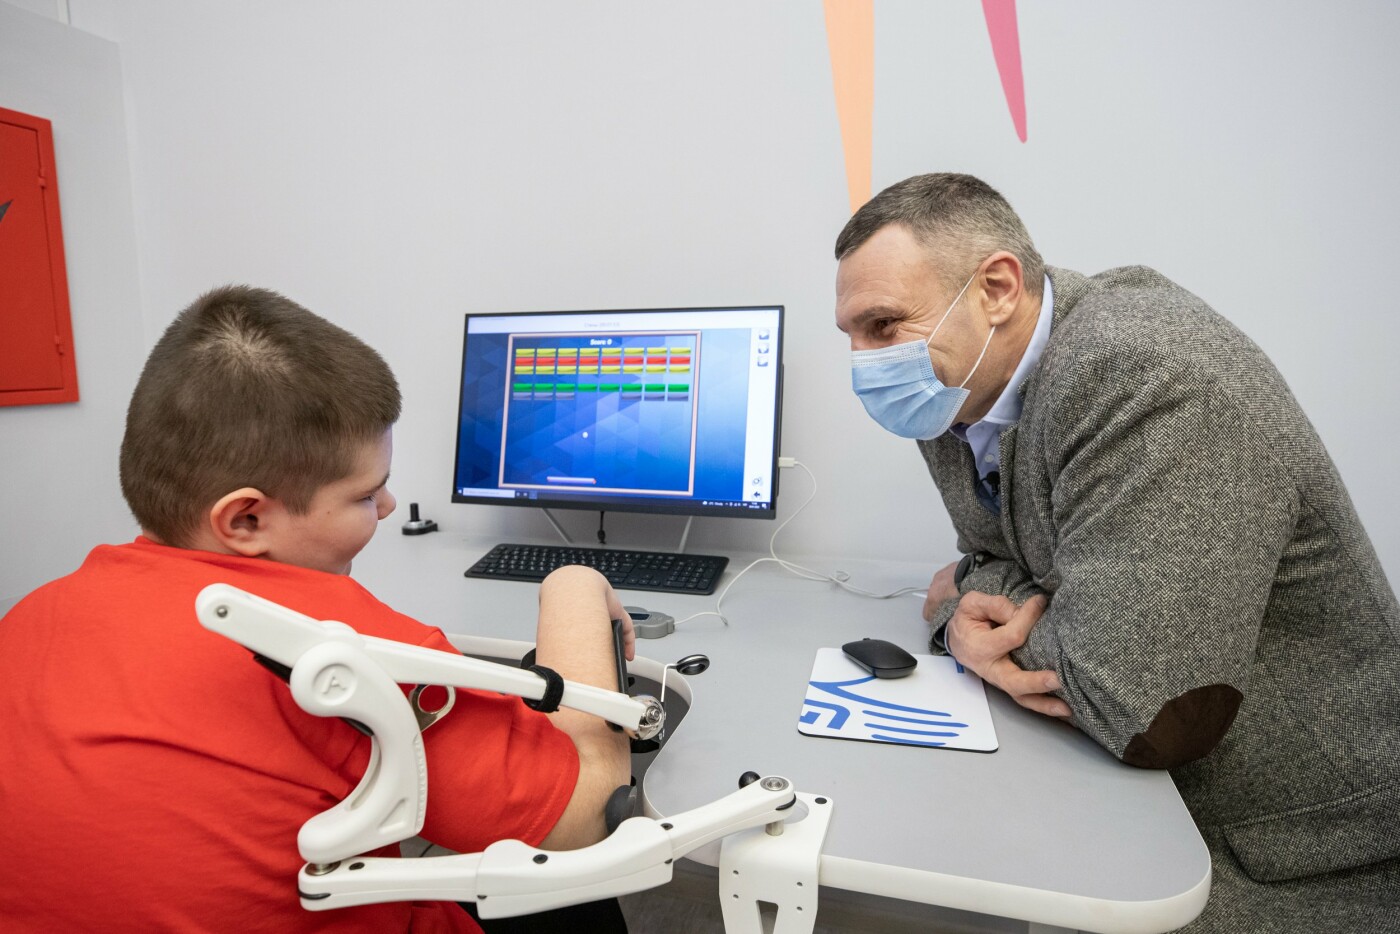 В Киеве на Дарнице открылся центр реабилитации летей и лиц с инвалидностью